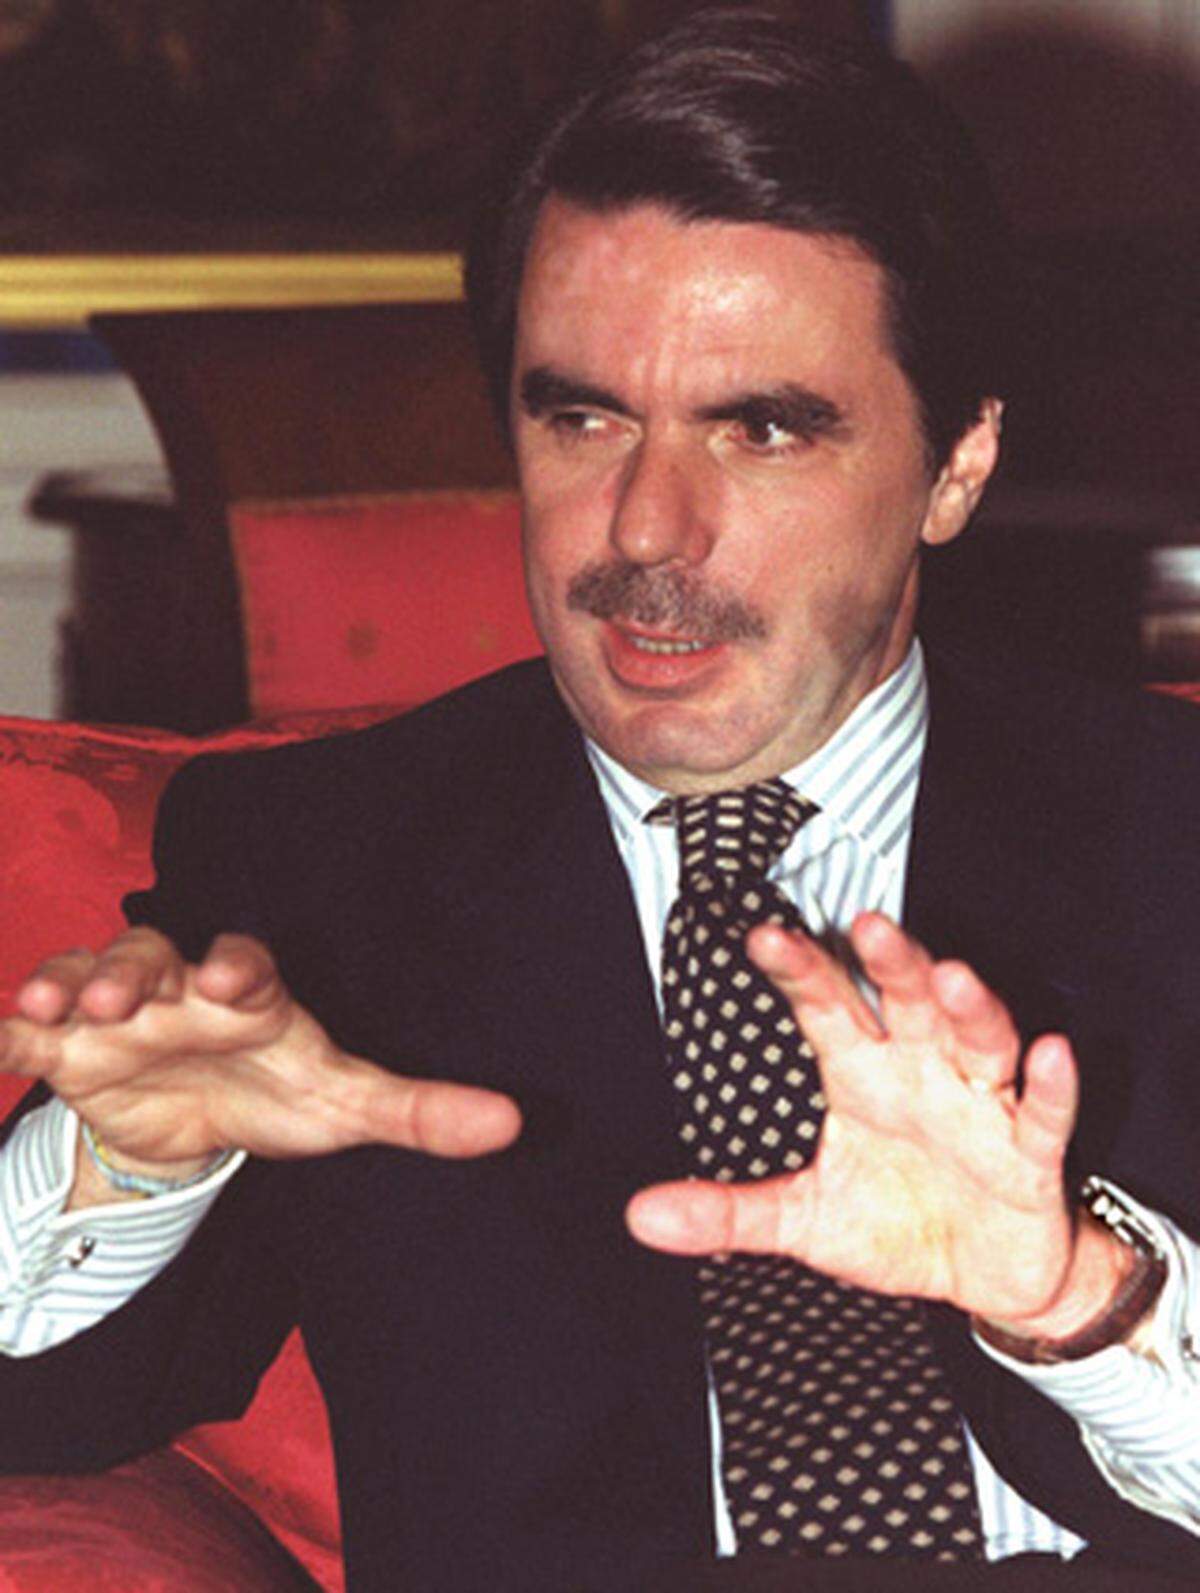 1995 verübten Mitglieder der Untergrundorganisation einen Anschlag auf den Oppositionsführer José María Aznar. Er überlebte leicht verletzt. Im Jahr darauf gewann seine Partei "Partido Popular" (PP) die Parlamentswahlen und machte Aznar zum Regierungschef.